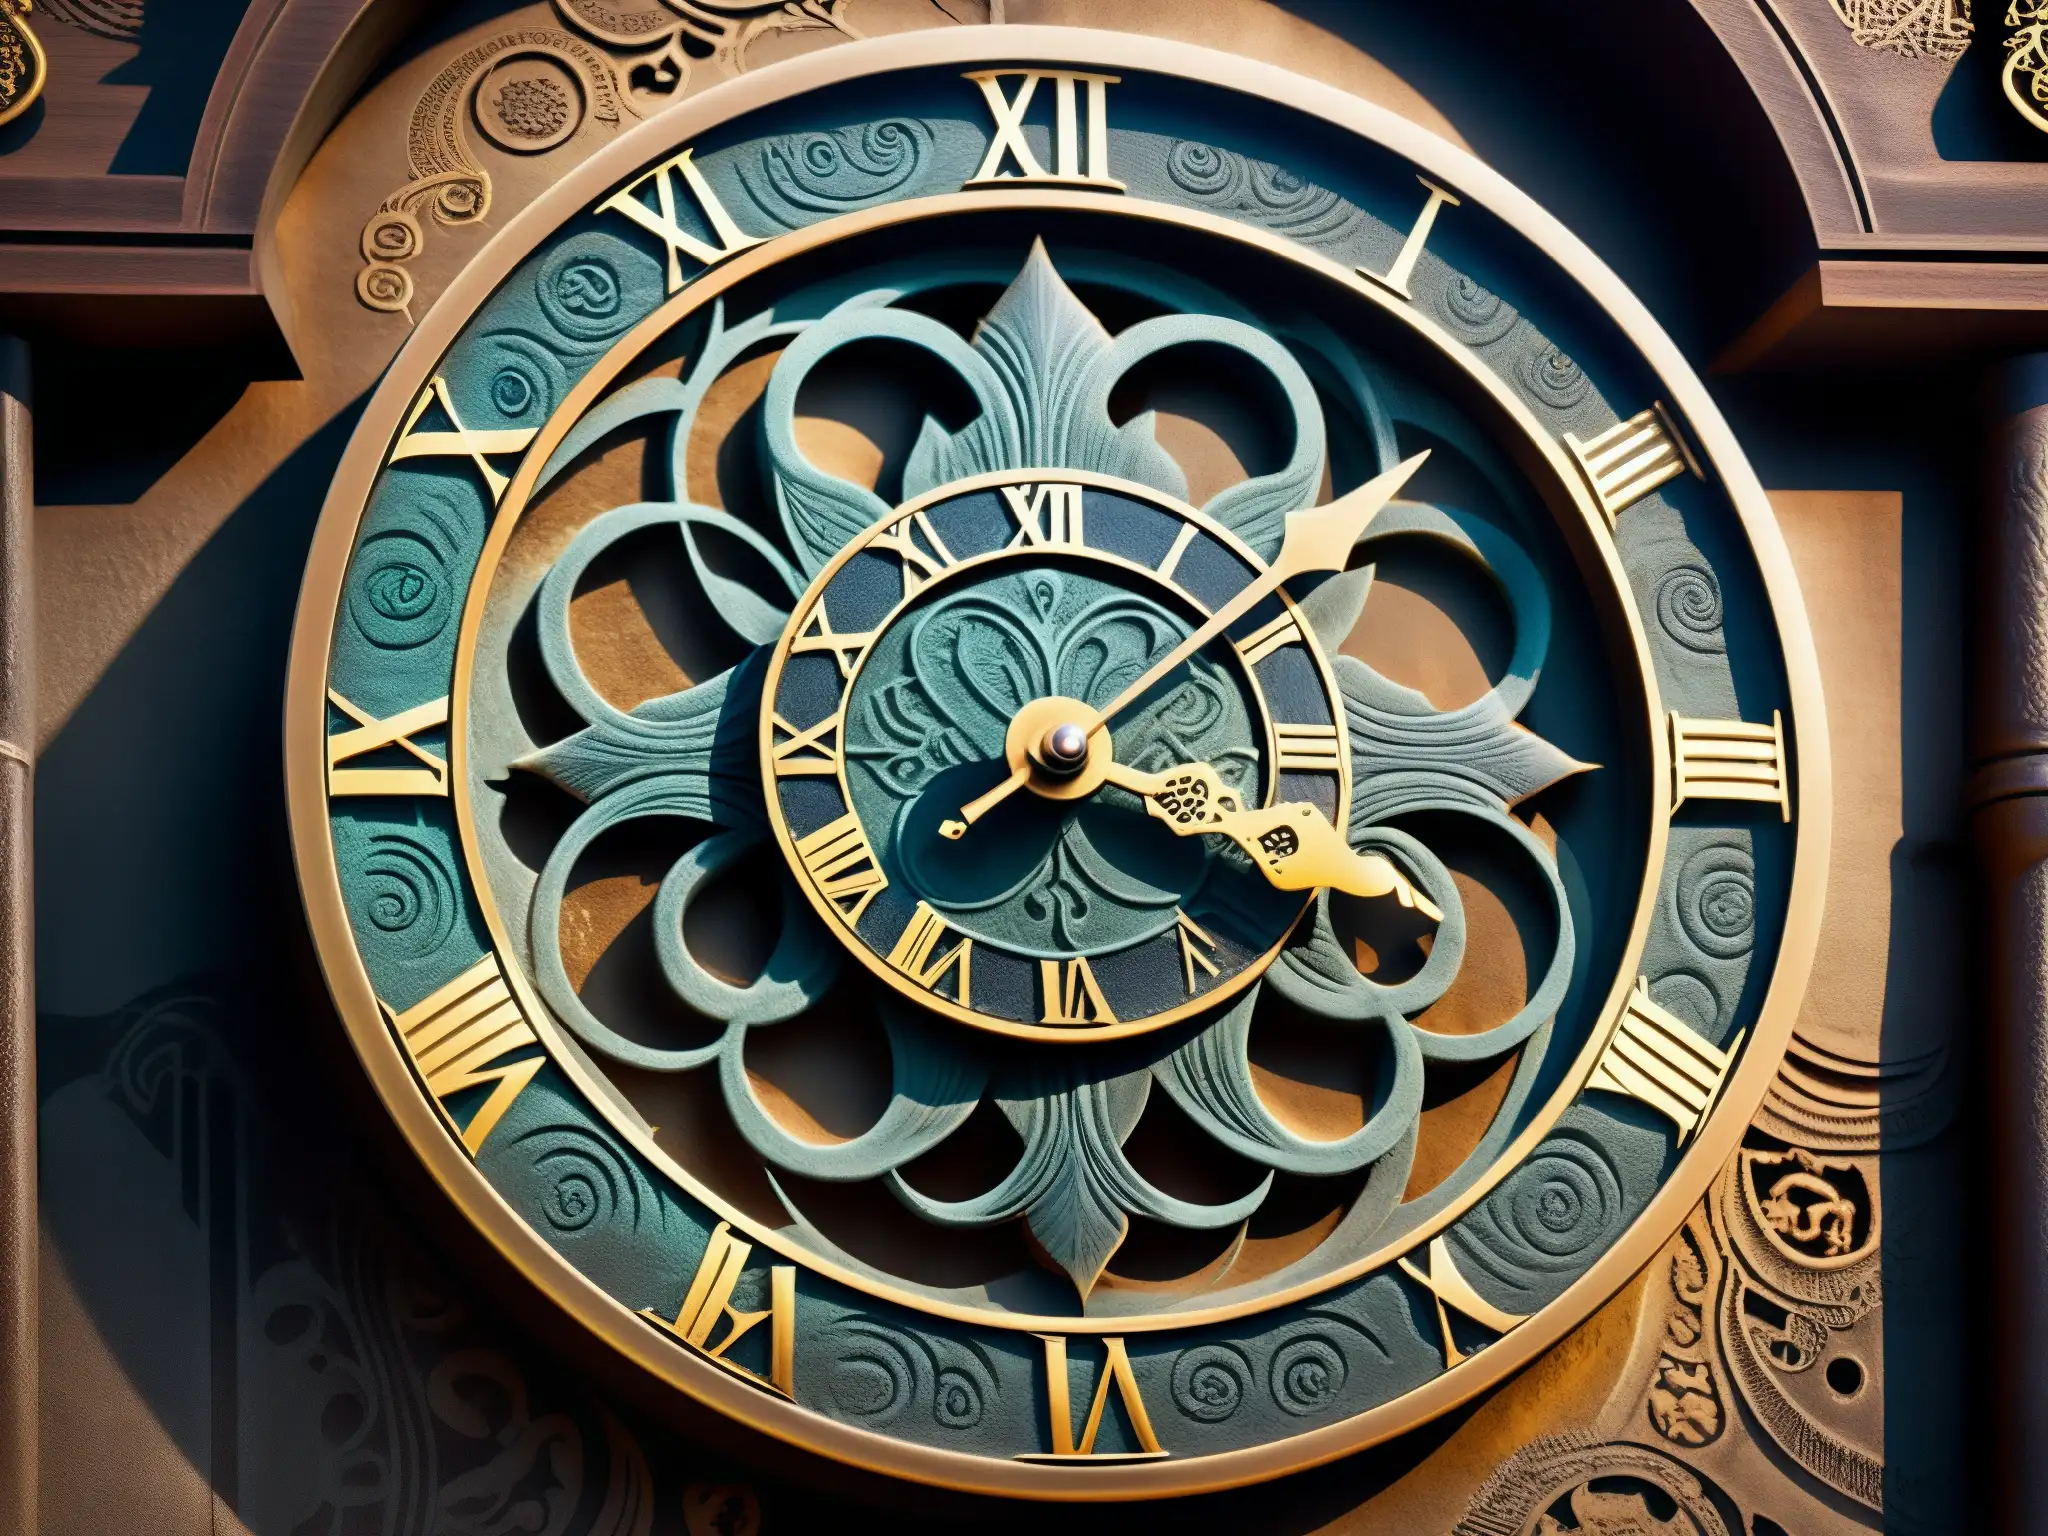 Detalle del antiguo y maldito reloj de Myojin, con intrincados grabados y símbolos en su superficie desgastada